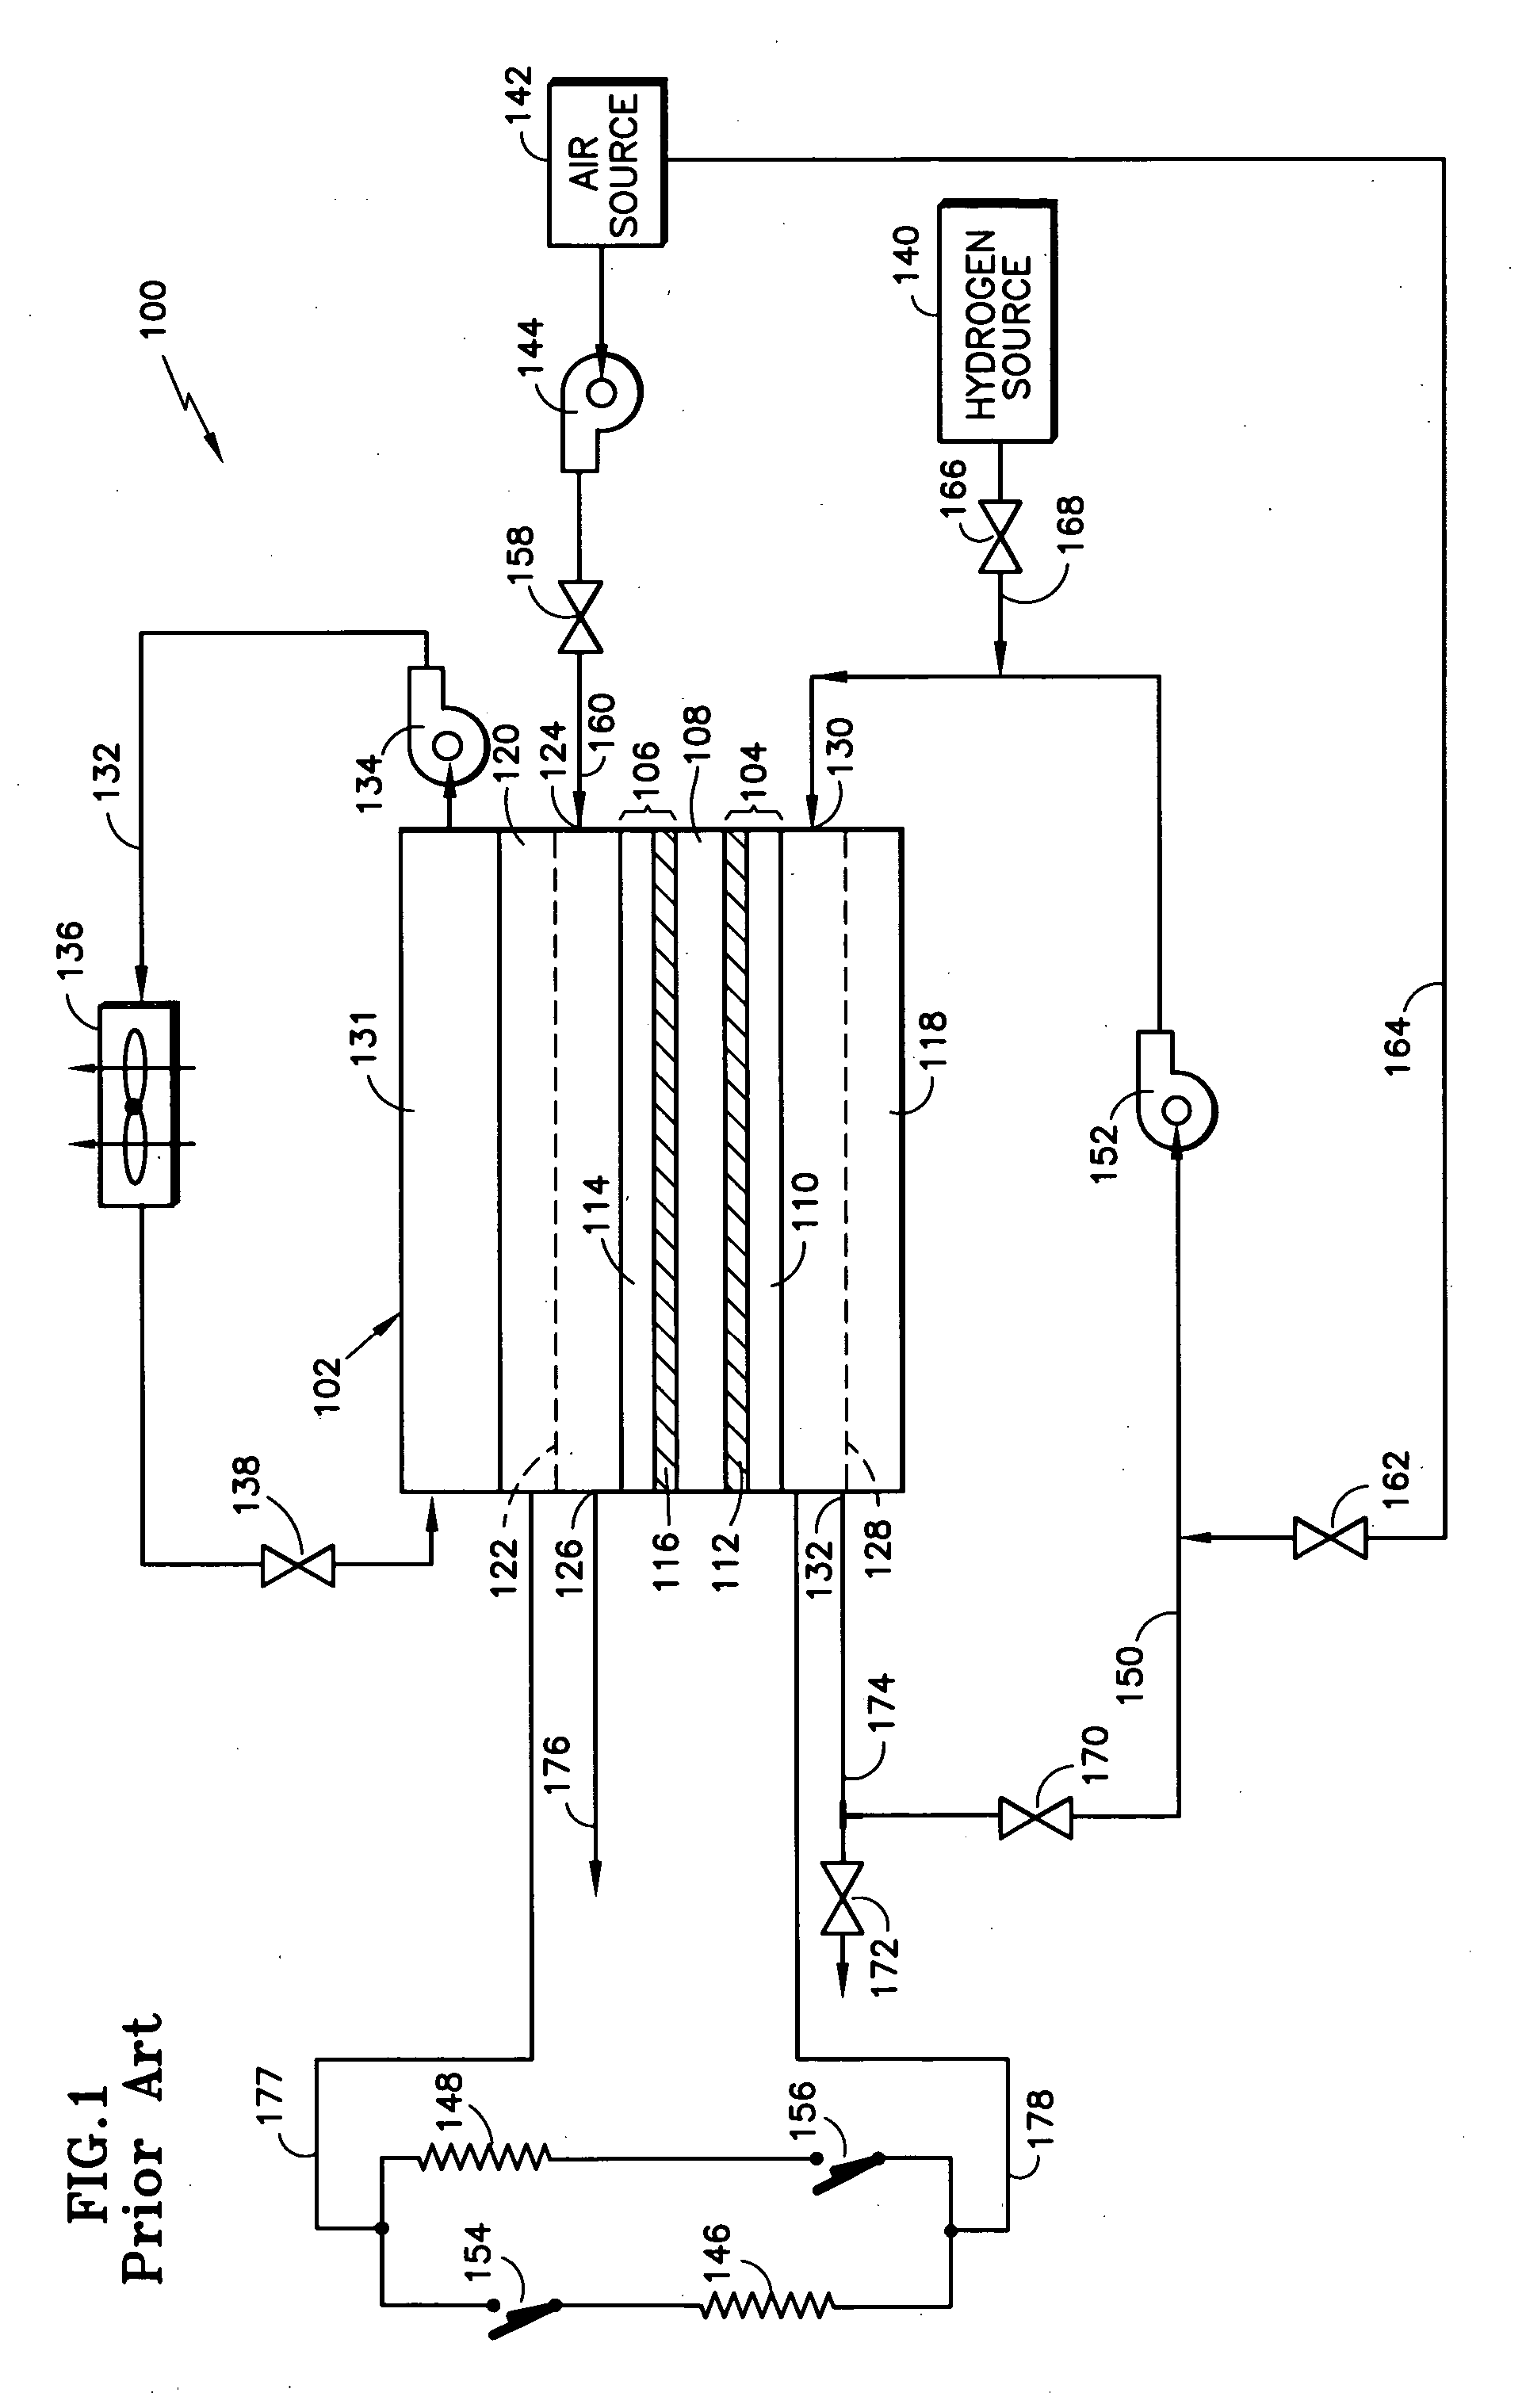 Fuel cell voltage control